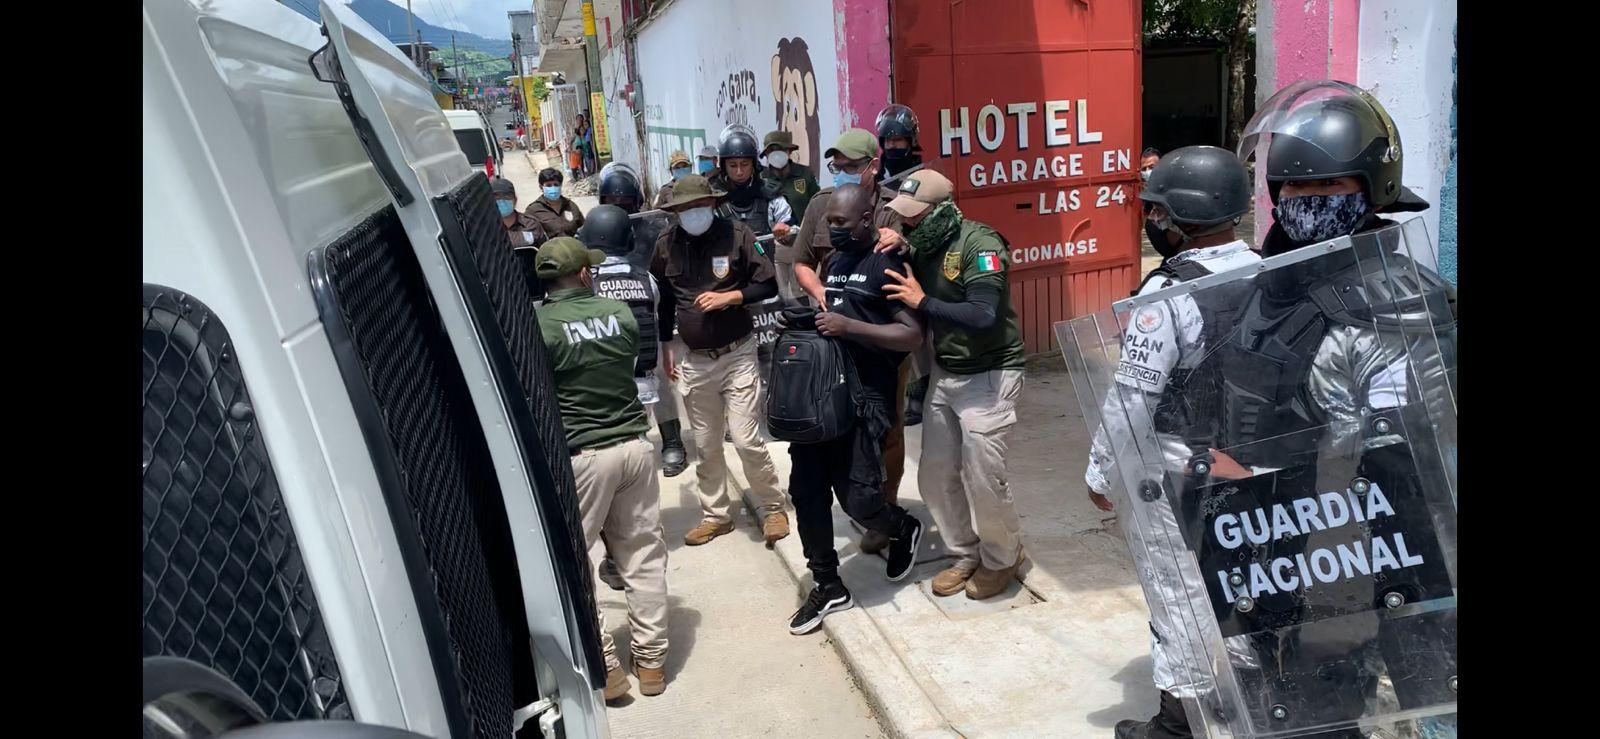 INM y Guardia Nacional buscan a migrantes en hoteles de Chiapas; bloquean paso de caravana